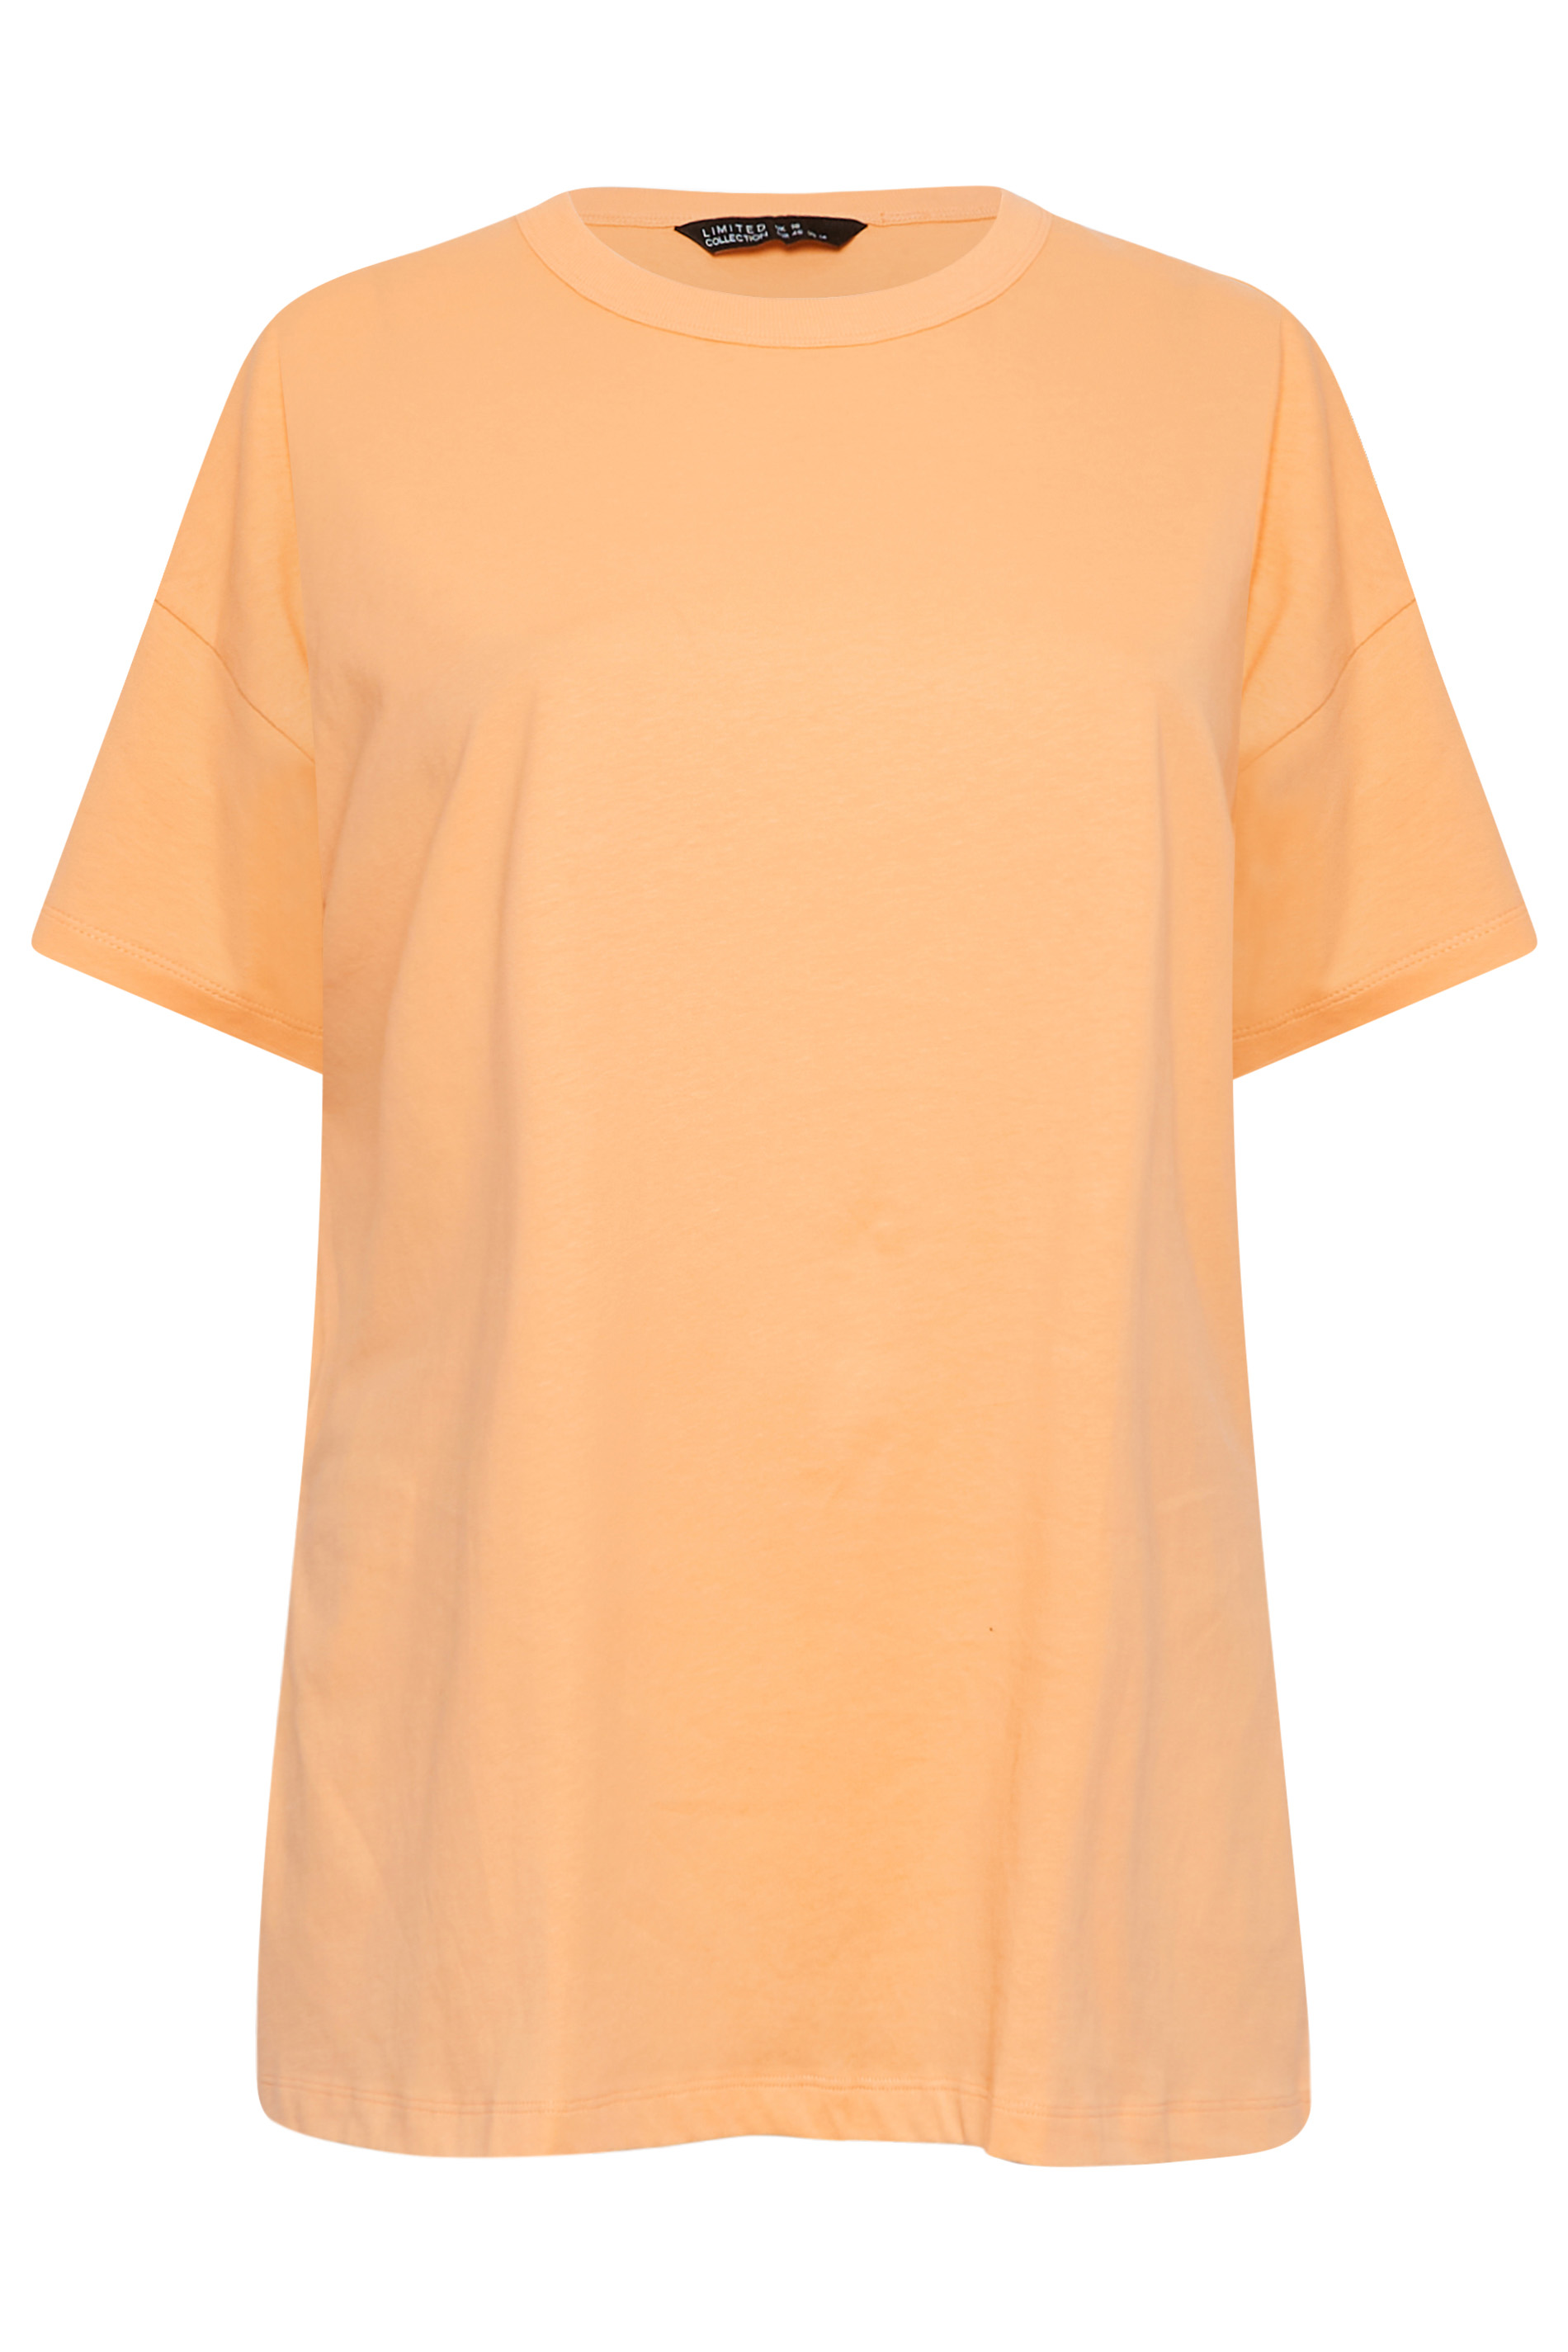 LIMITED COLLECTION Curve Orange Oversized Side Split T-shirt 